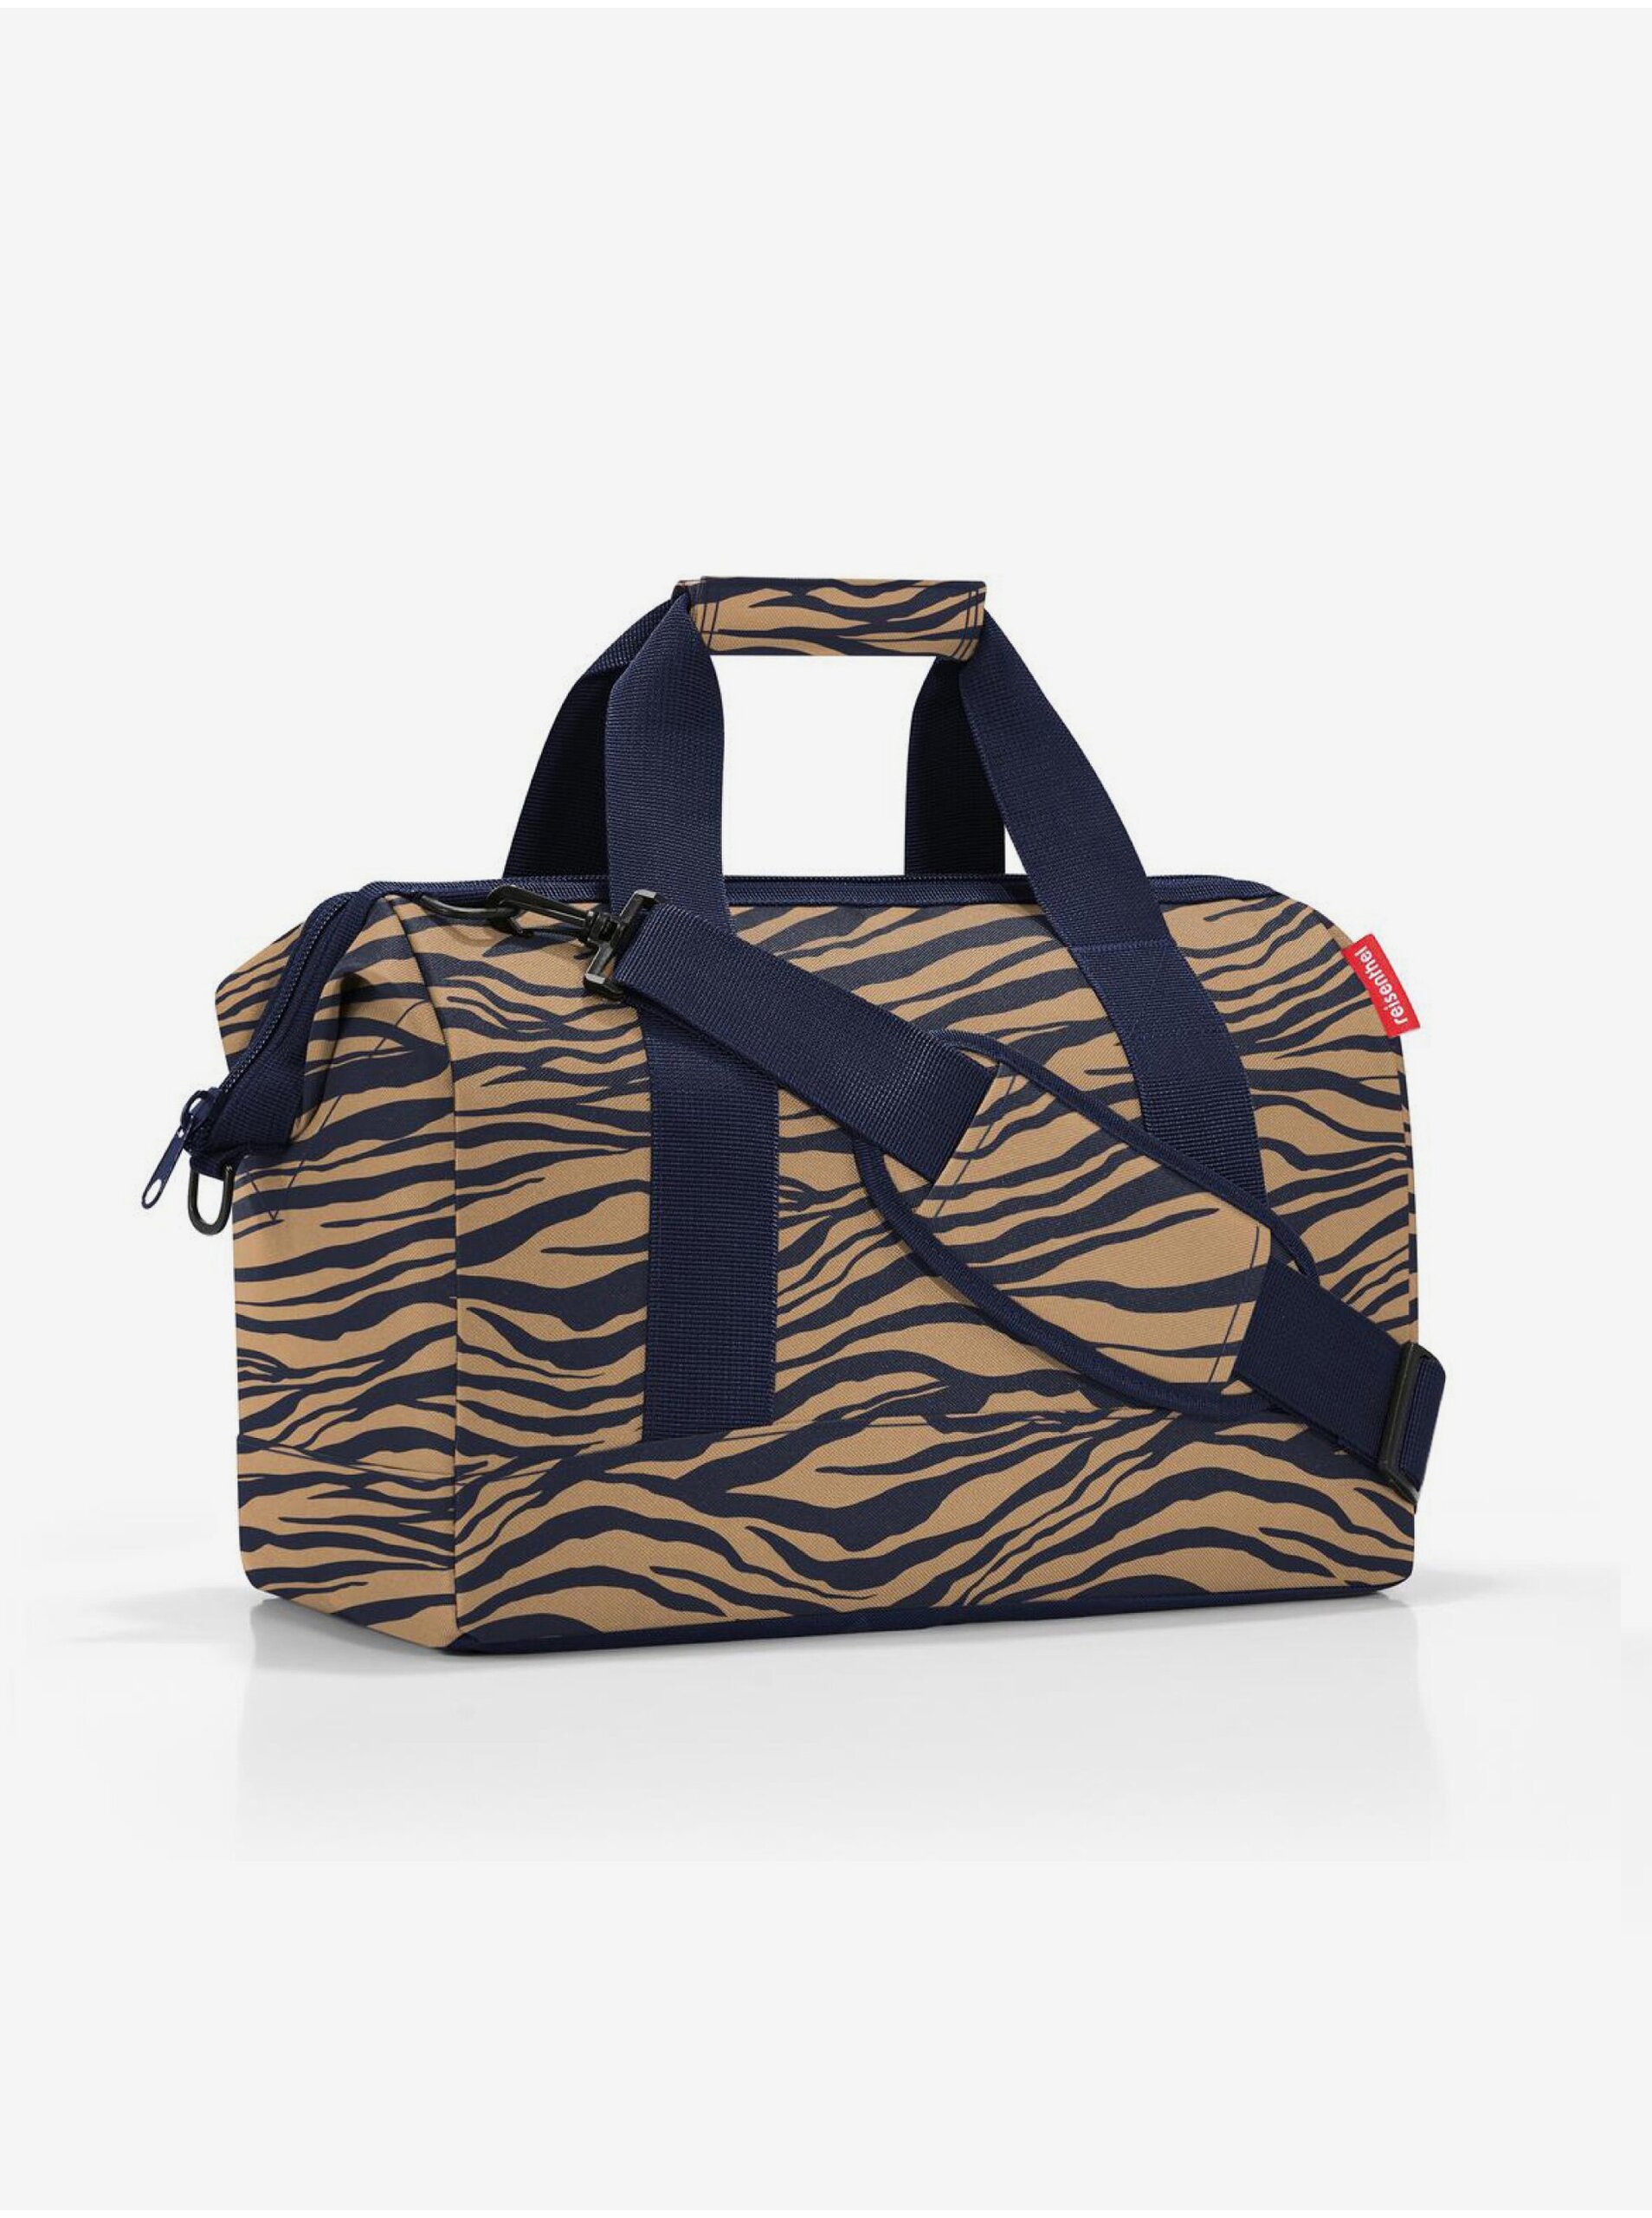 Lacno Modro-hnedá dámska cestovná taška so zvieracím vzorom Reisenthel Allrounder M Sumatra